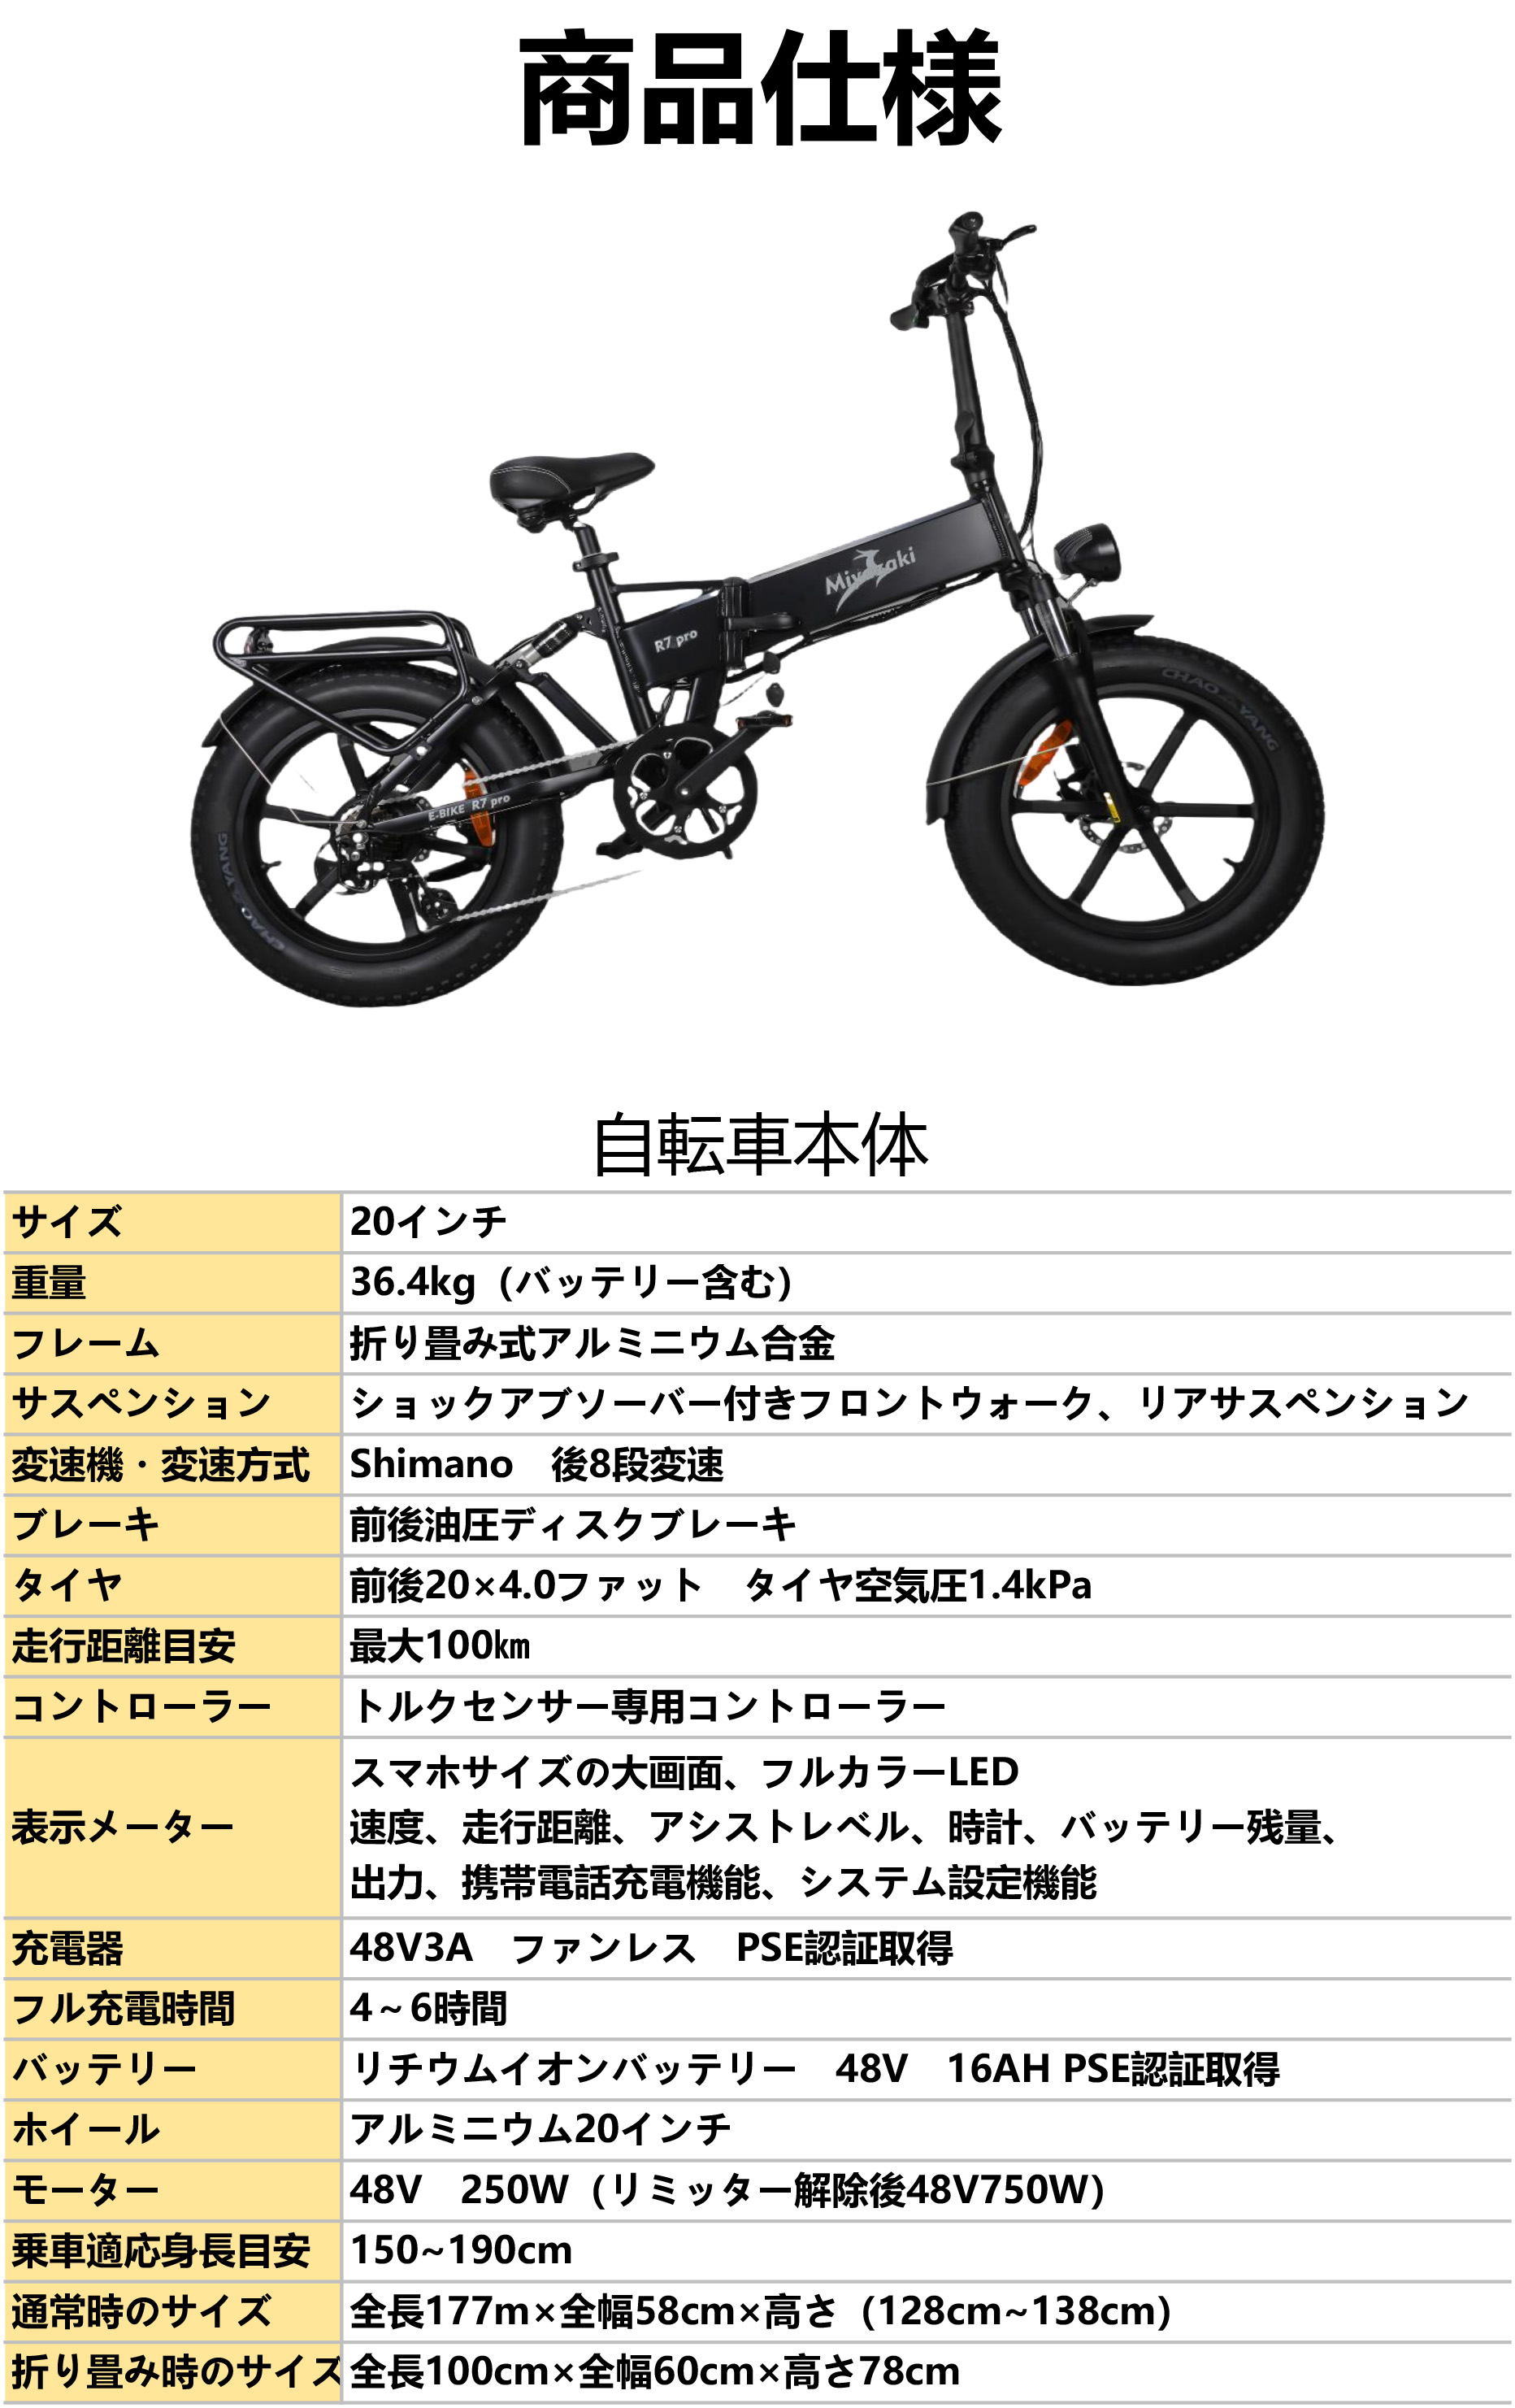 型式認定E-bike Miyazaki R7 PROファットバイク 電動アシスト自転車 